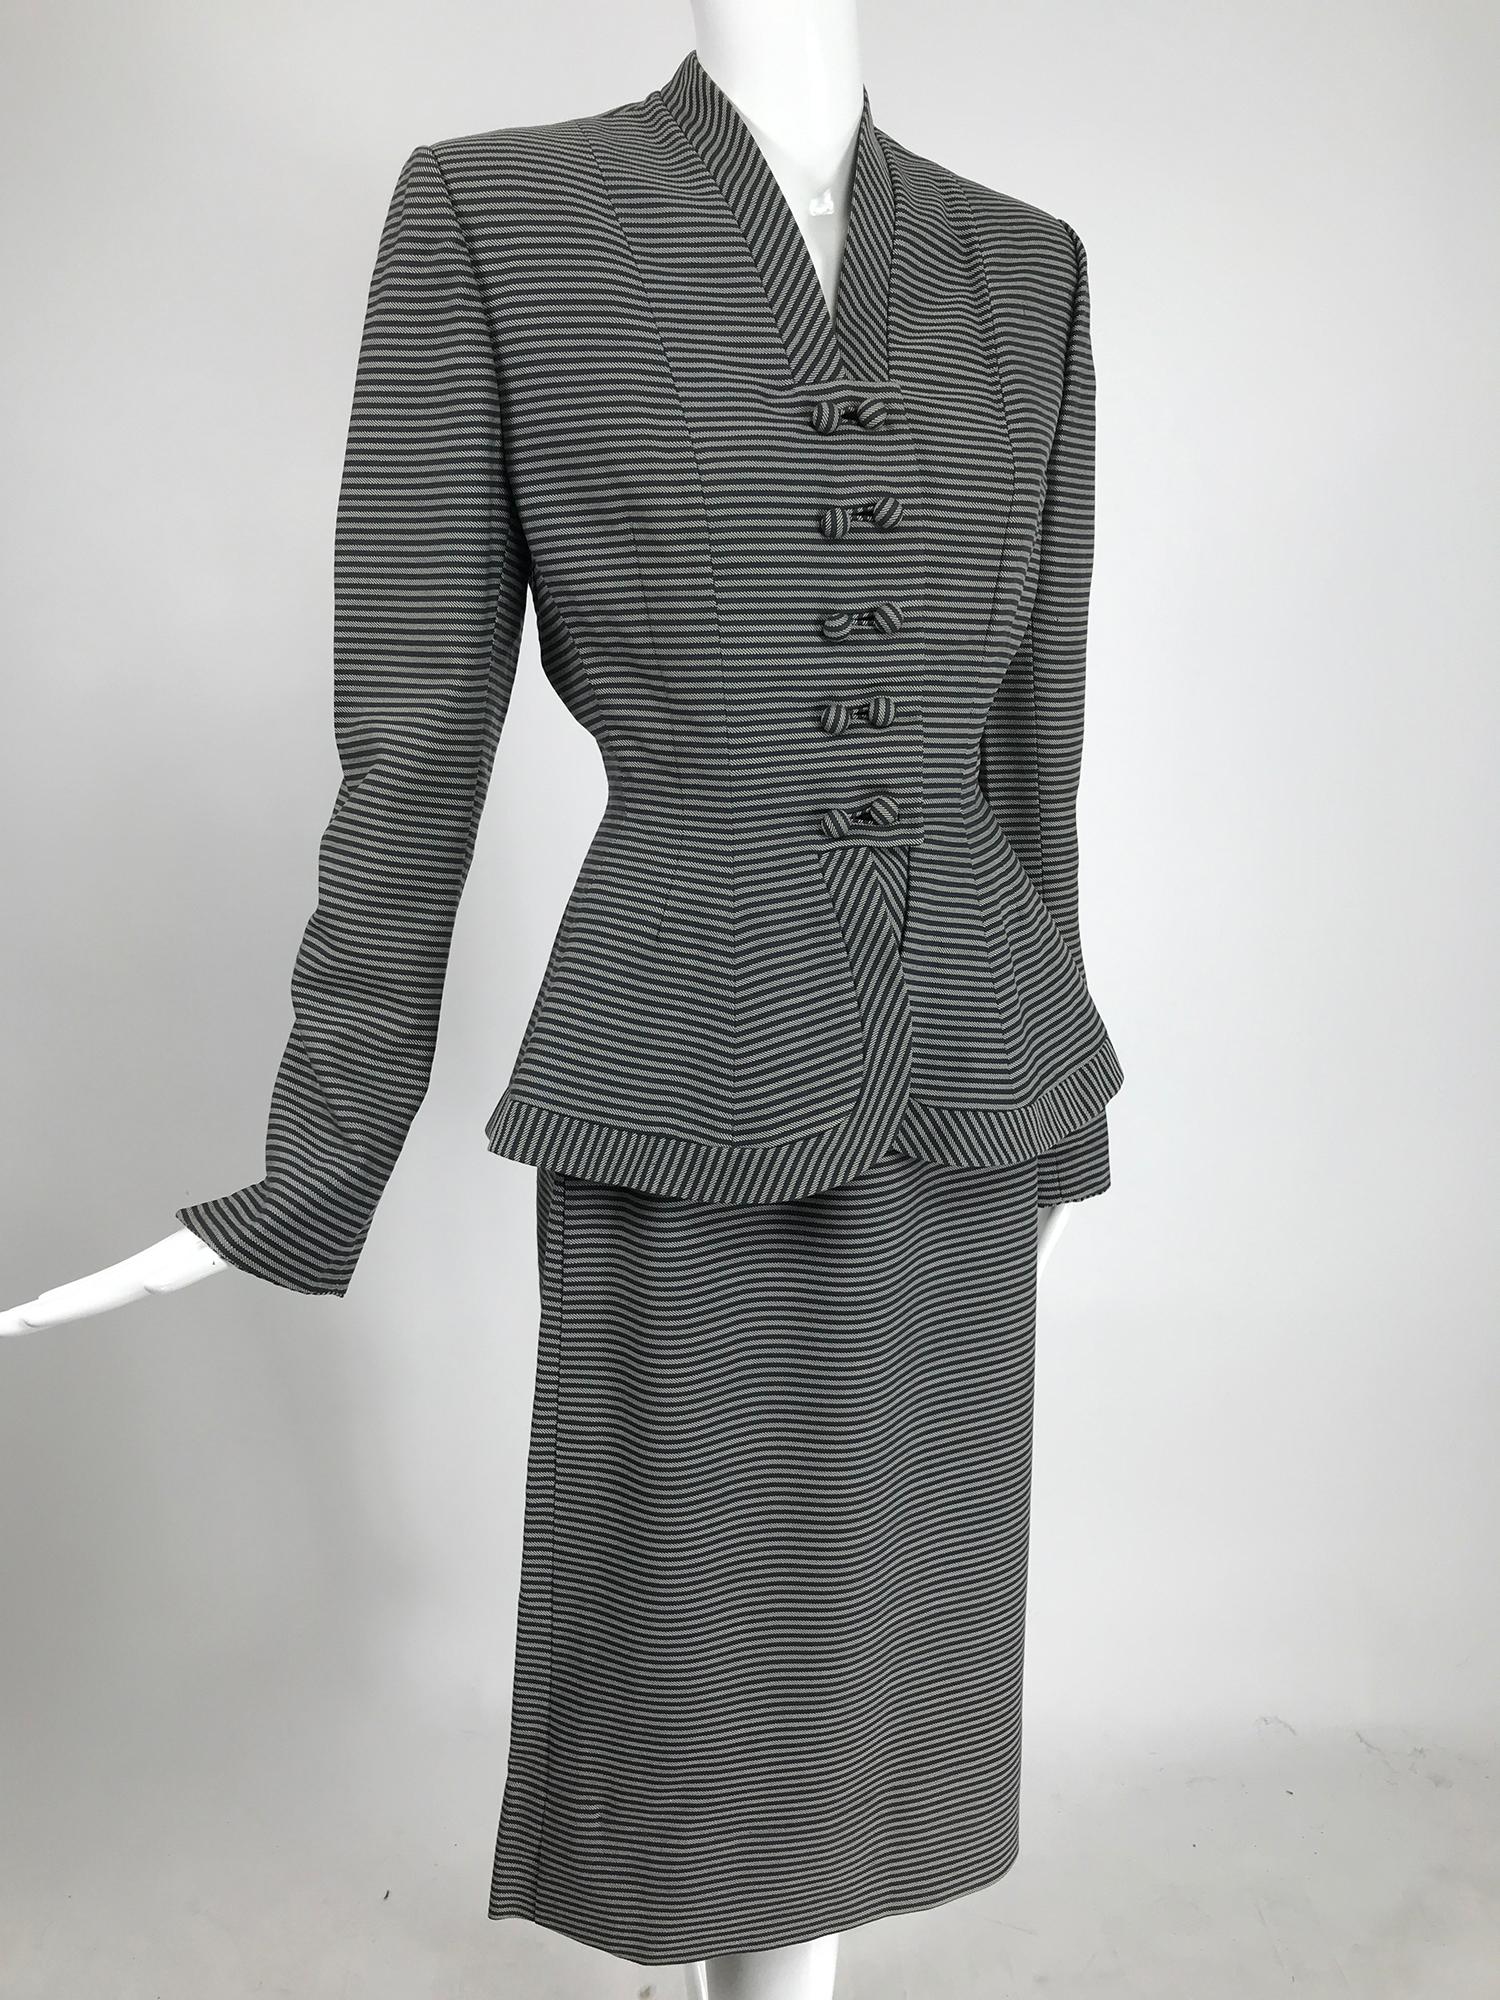 Lilli Ann 1940s nip Taille Schößchen Saum schwarz und weiß gestreiften Wolle Rock Anzug. Stilvoller Anzug, dessen Jacke eine Anspielung auf den Bar-Anzug von Christian Dior ist. Diese Jacke ist wirklich toll in schmalen schwarzen und weißen